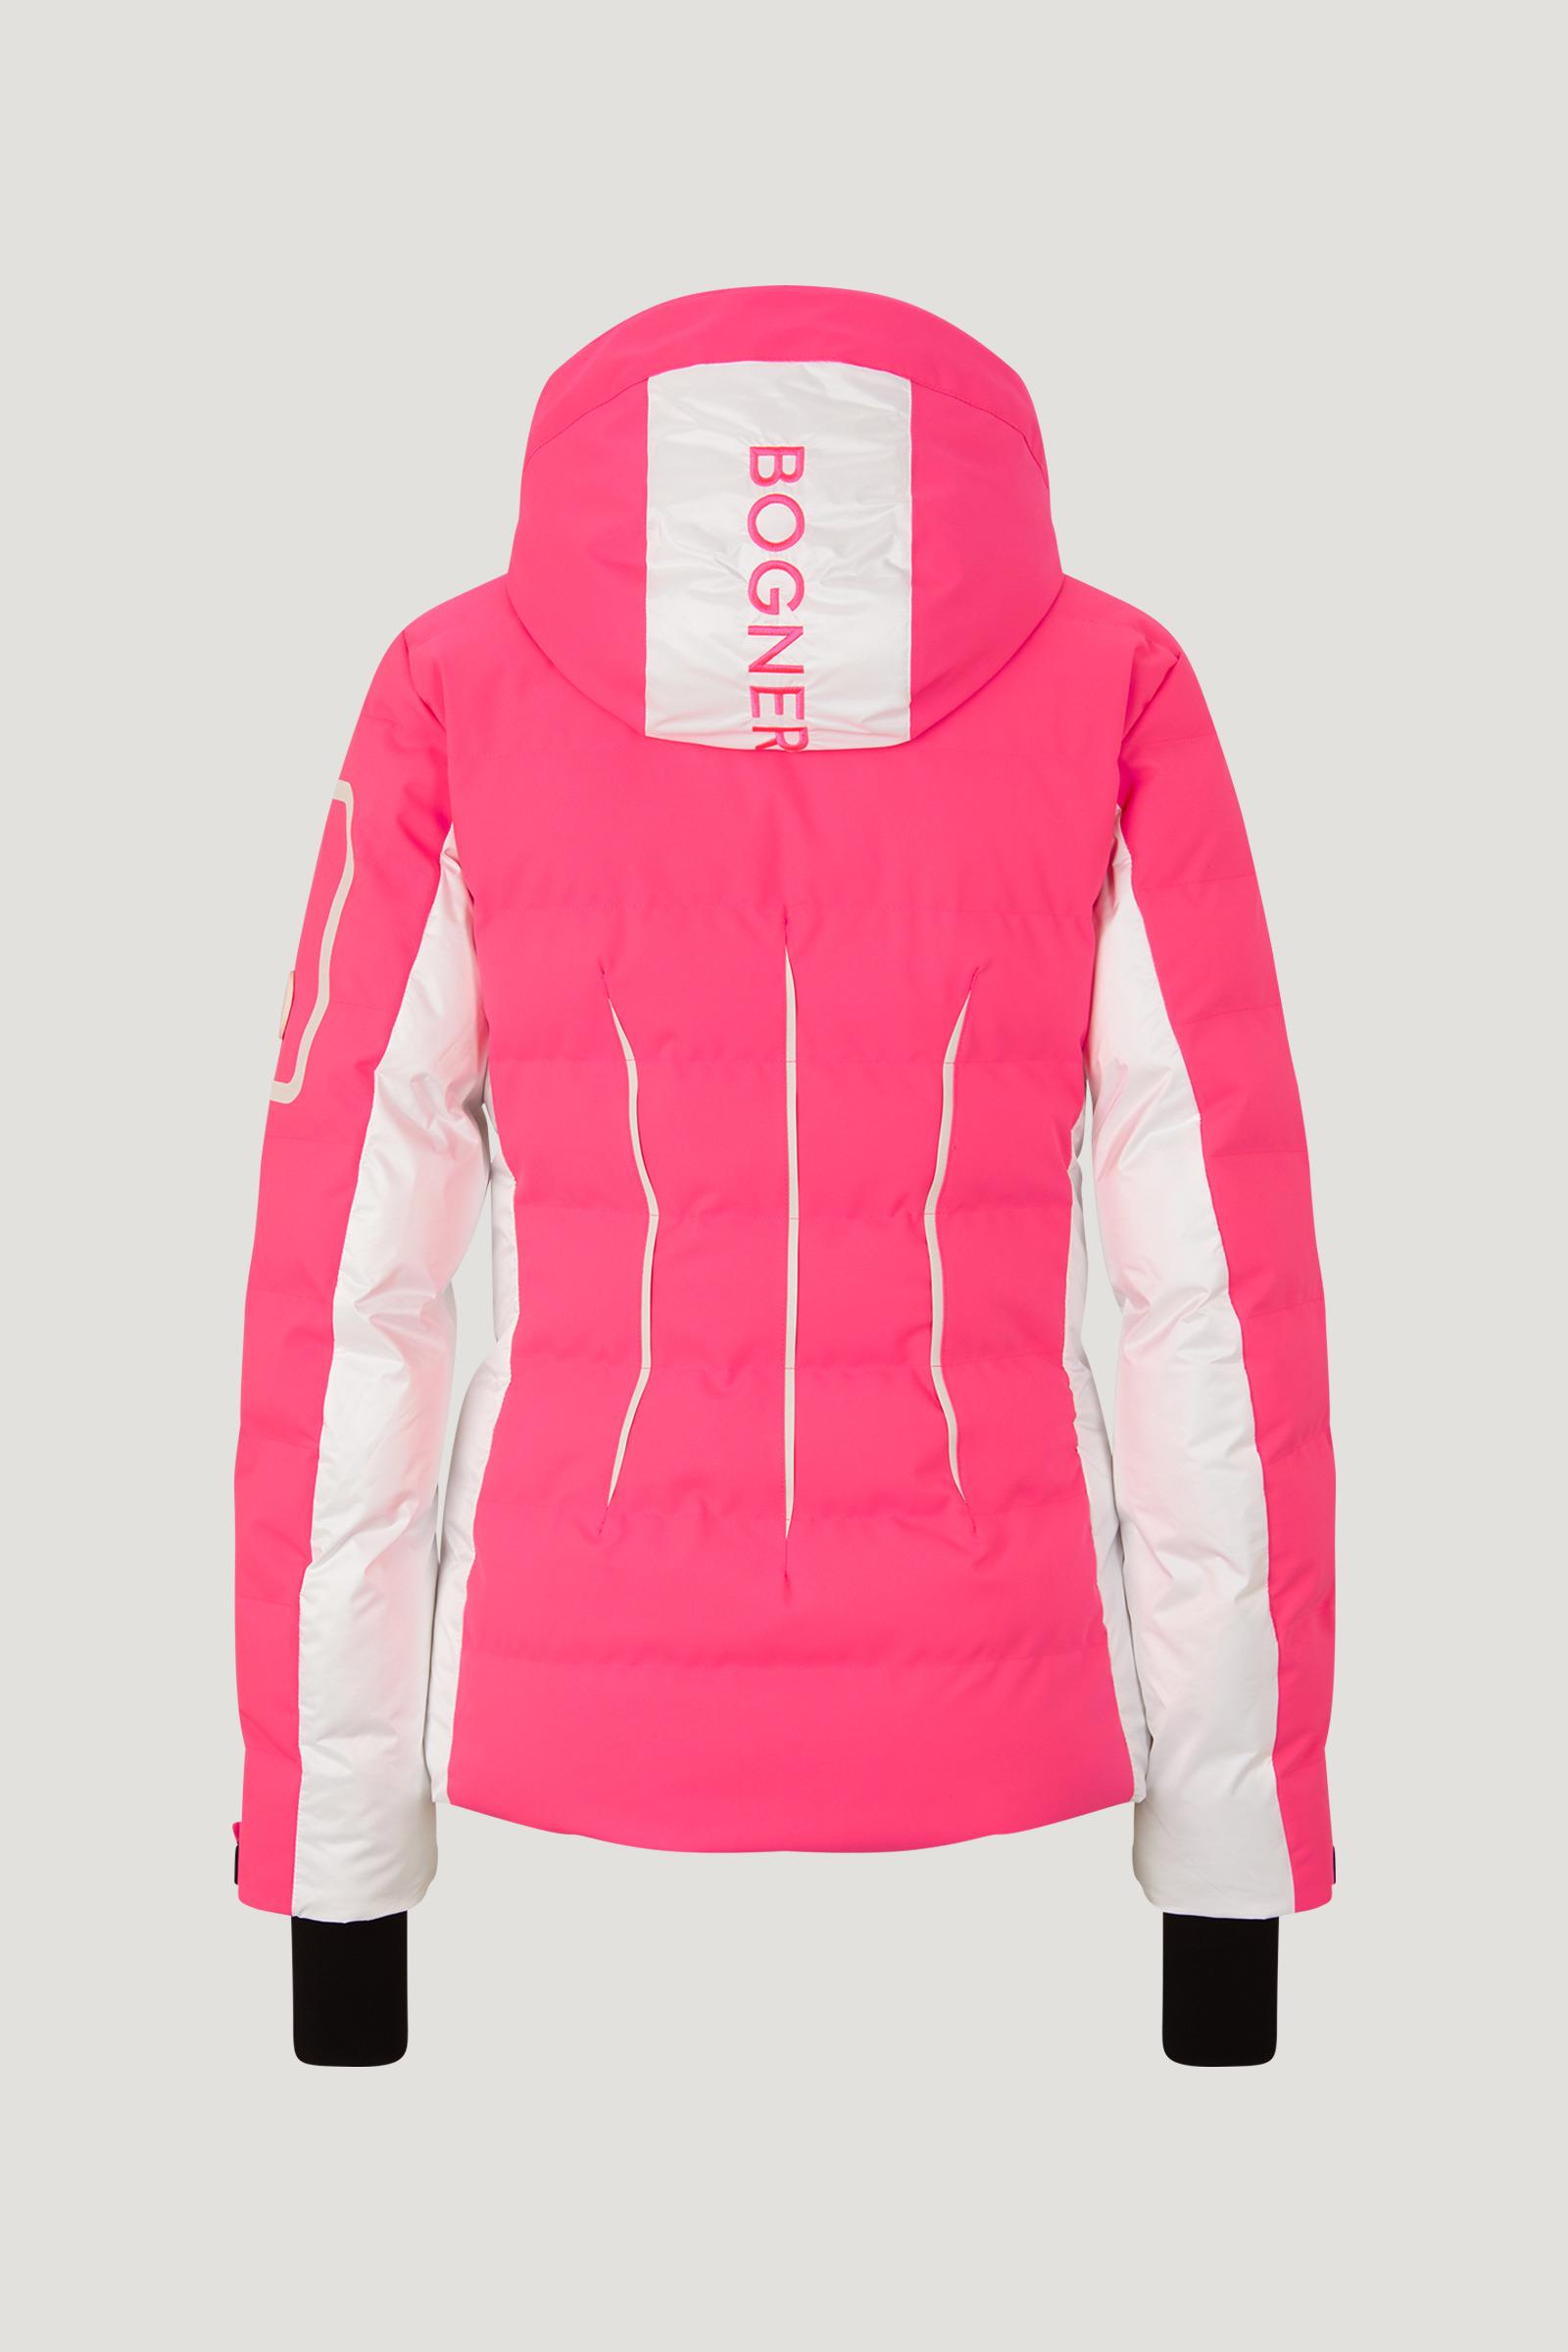 Bogner Rubber Elly Ski Jacket in Pink/White (Pink) | Lyst